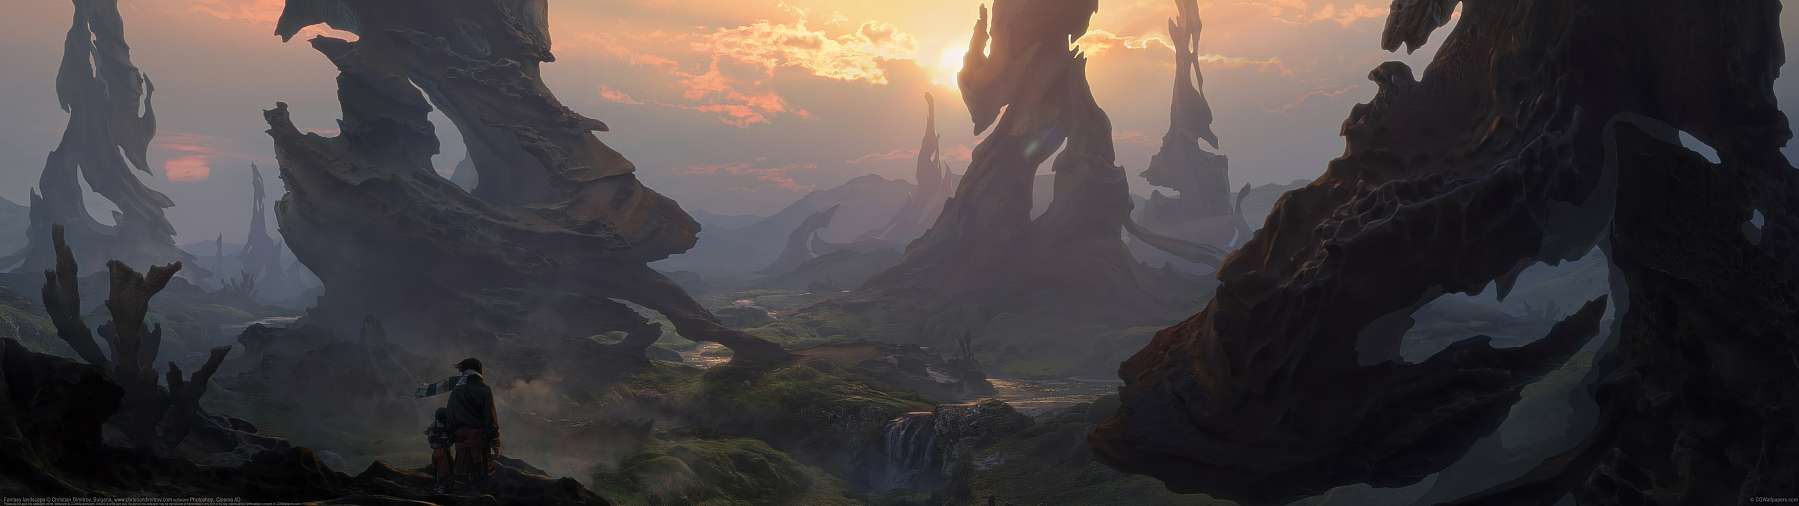 Fantasy landscape ultrawide wallpaper